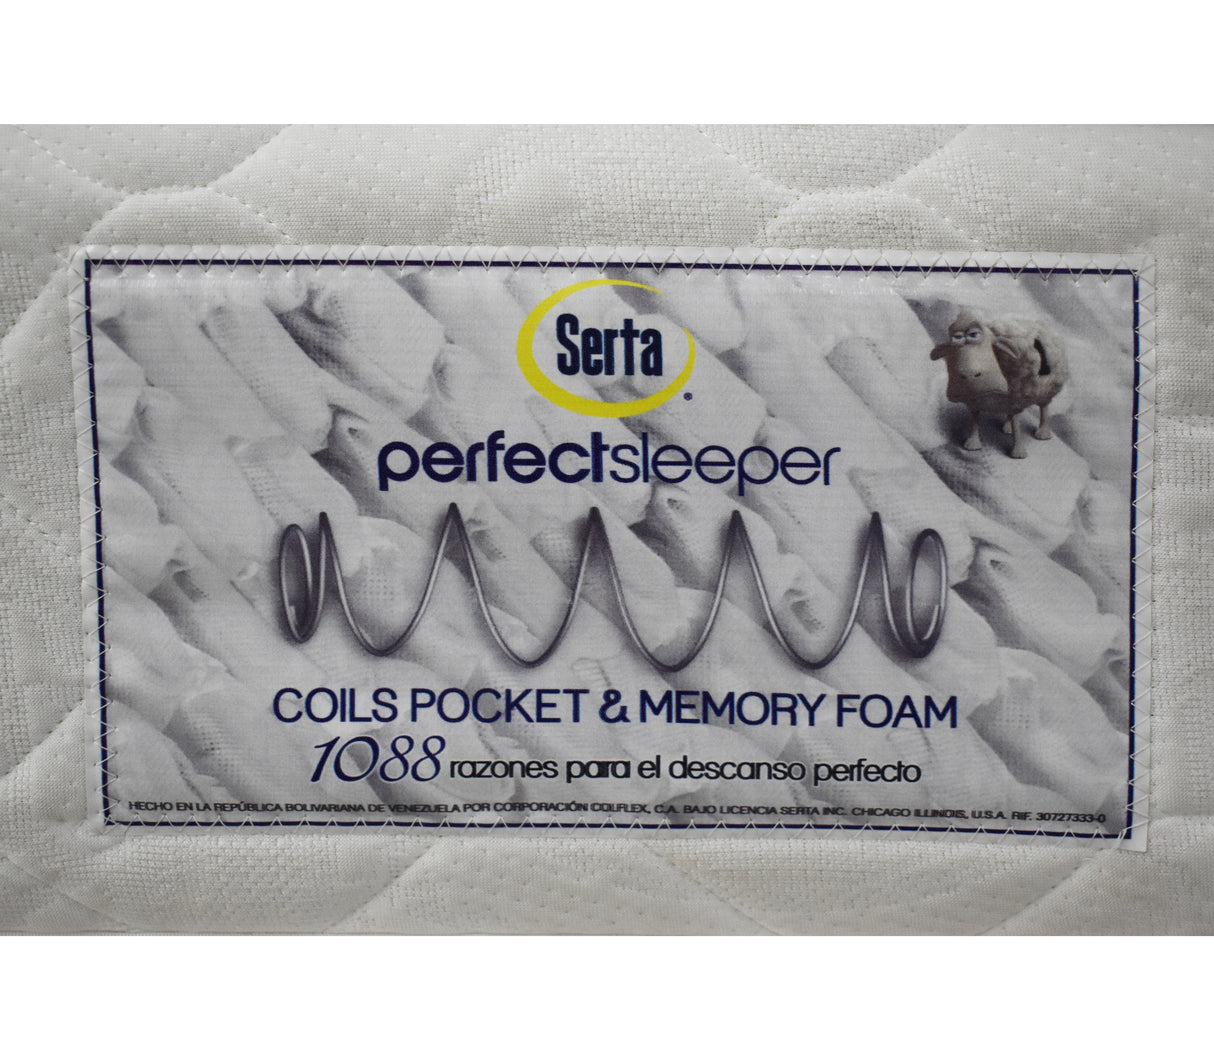 Colchón queen (160cm X 190cm) perfect sleep 1 pillow memory foam encapsulado Serta